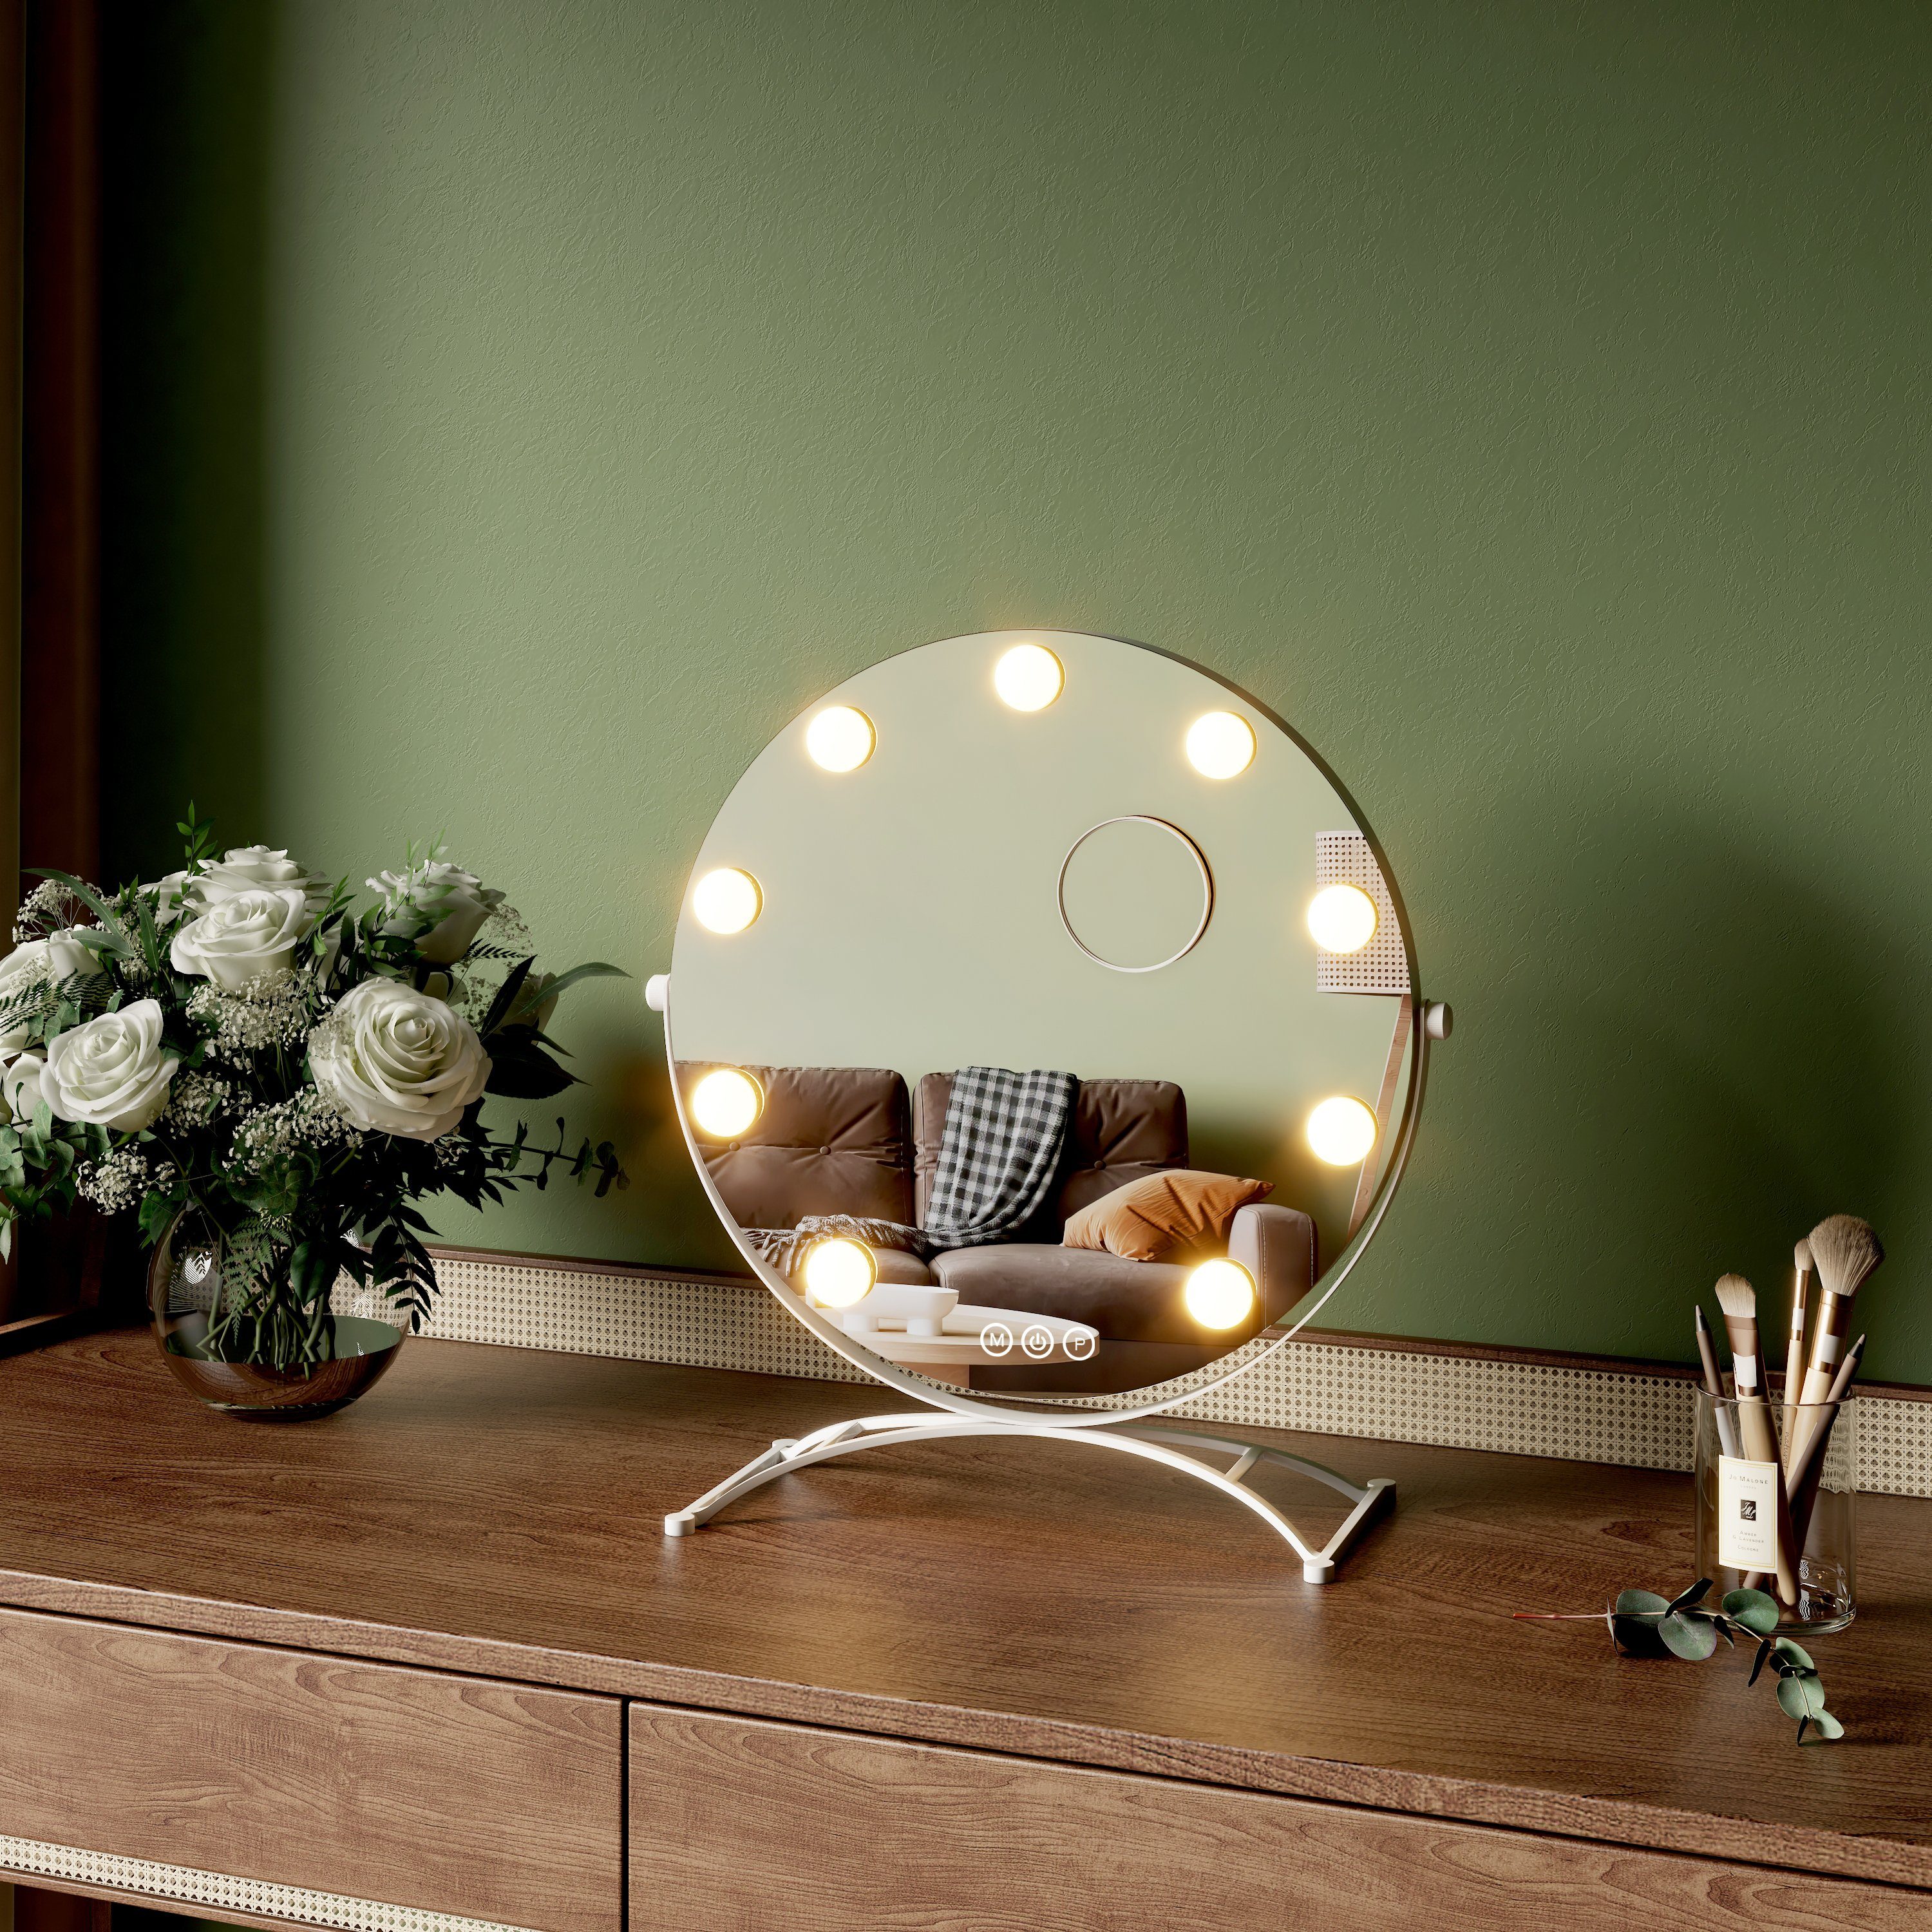 EMKE Kosmetikspiegel Runder Schminkspiegel Hollywood Spiegel mit Beleuchtung Tischspiegel, 3 Lichtfarben,Dimmbar,7 x Vergrößerungsspiegel,360° Drehbar Weiß